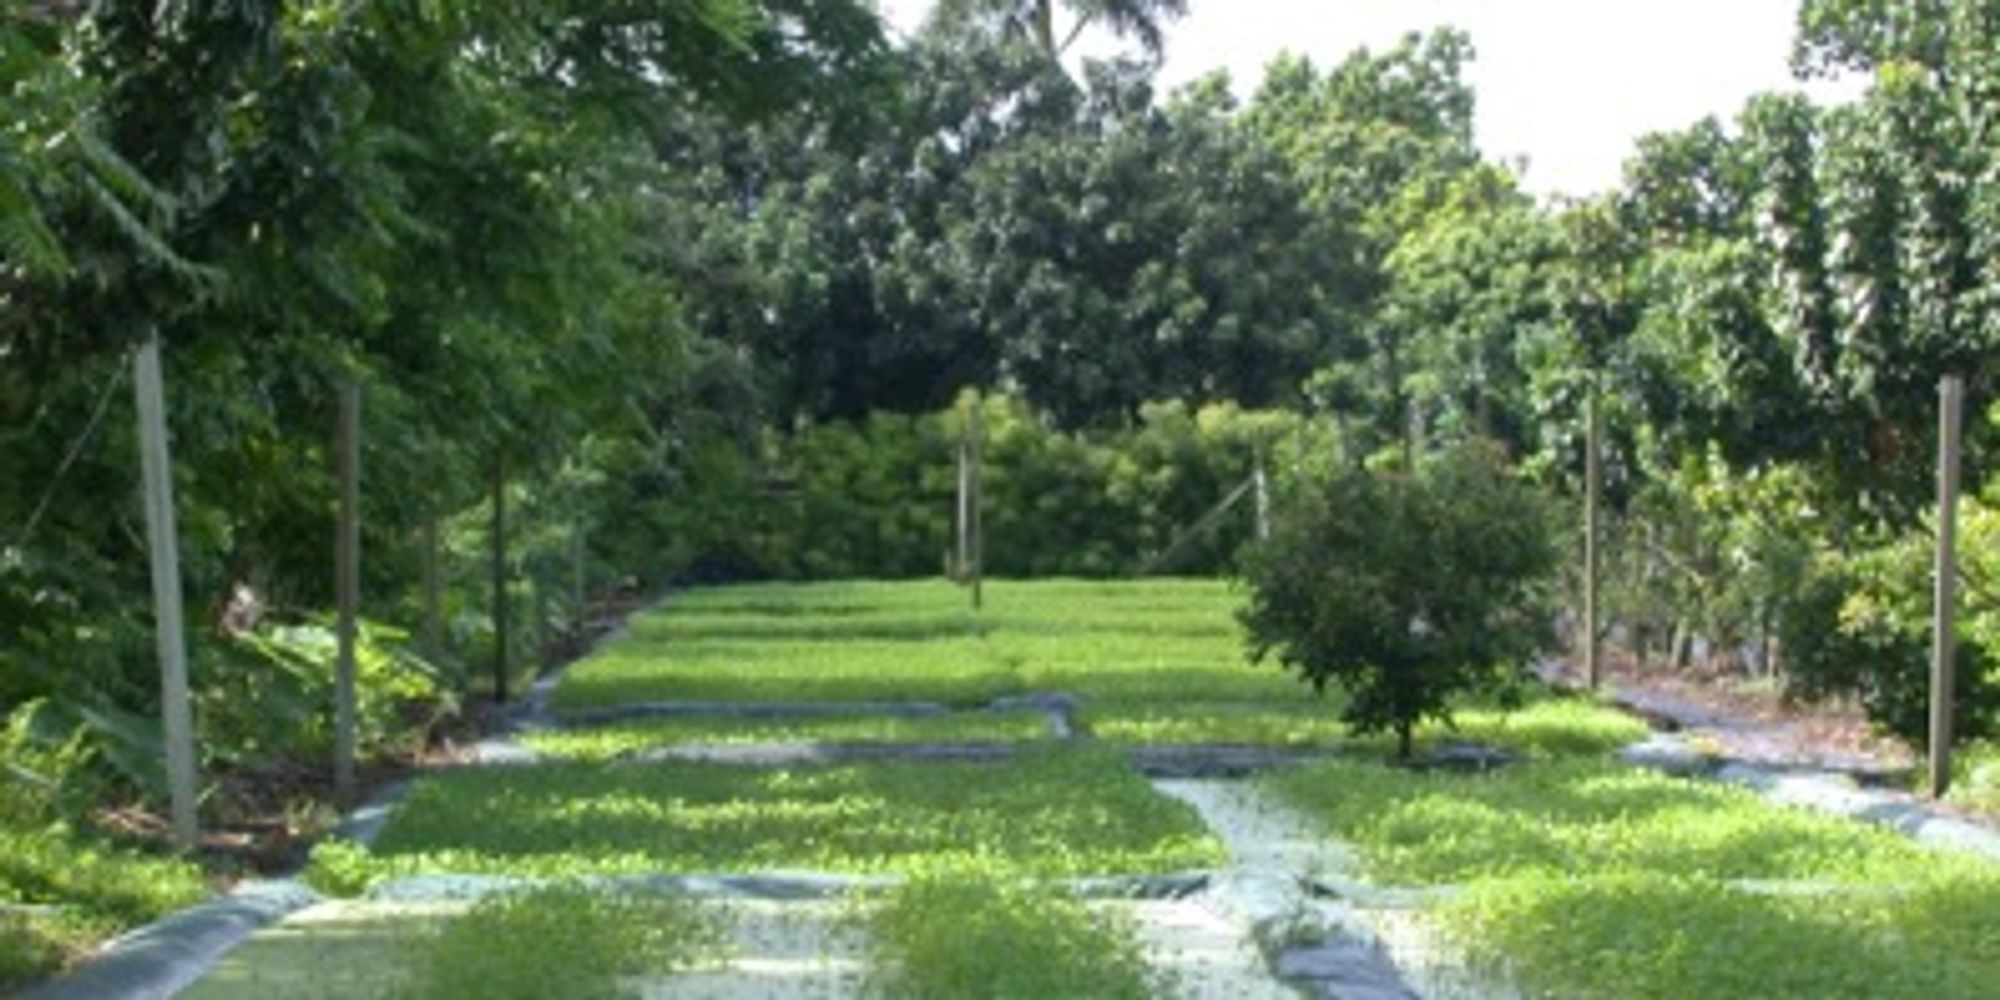 Pak van (Marselia crenata) grows in flooded field in Florida